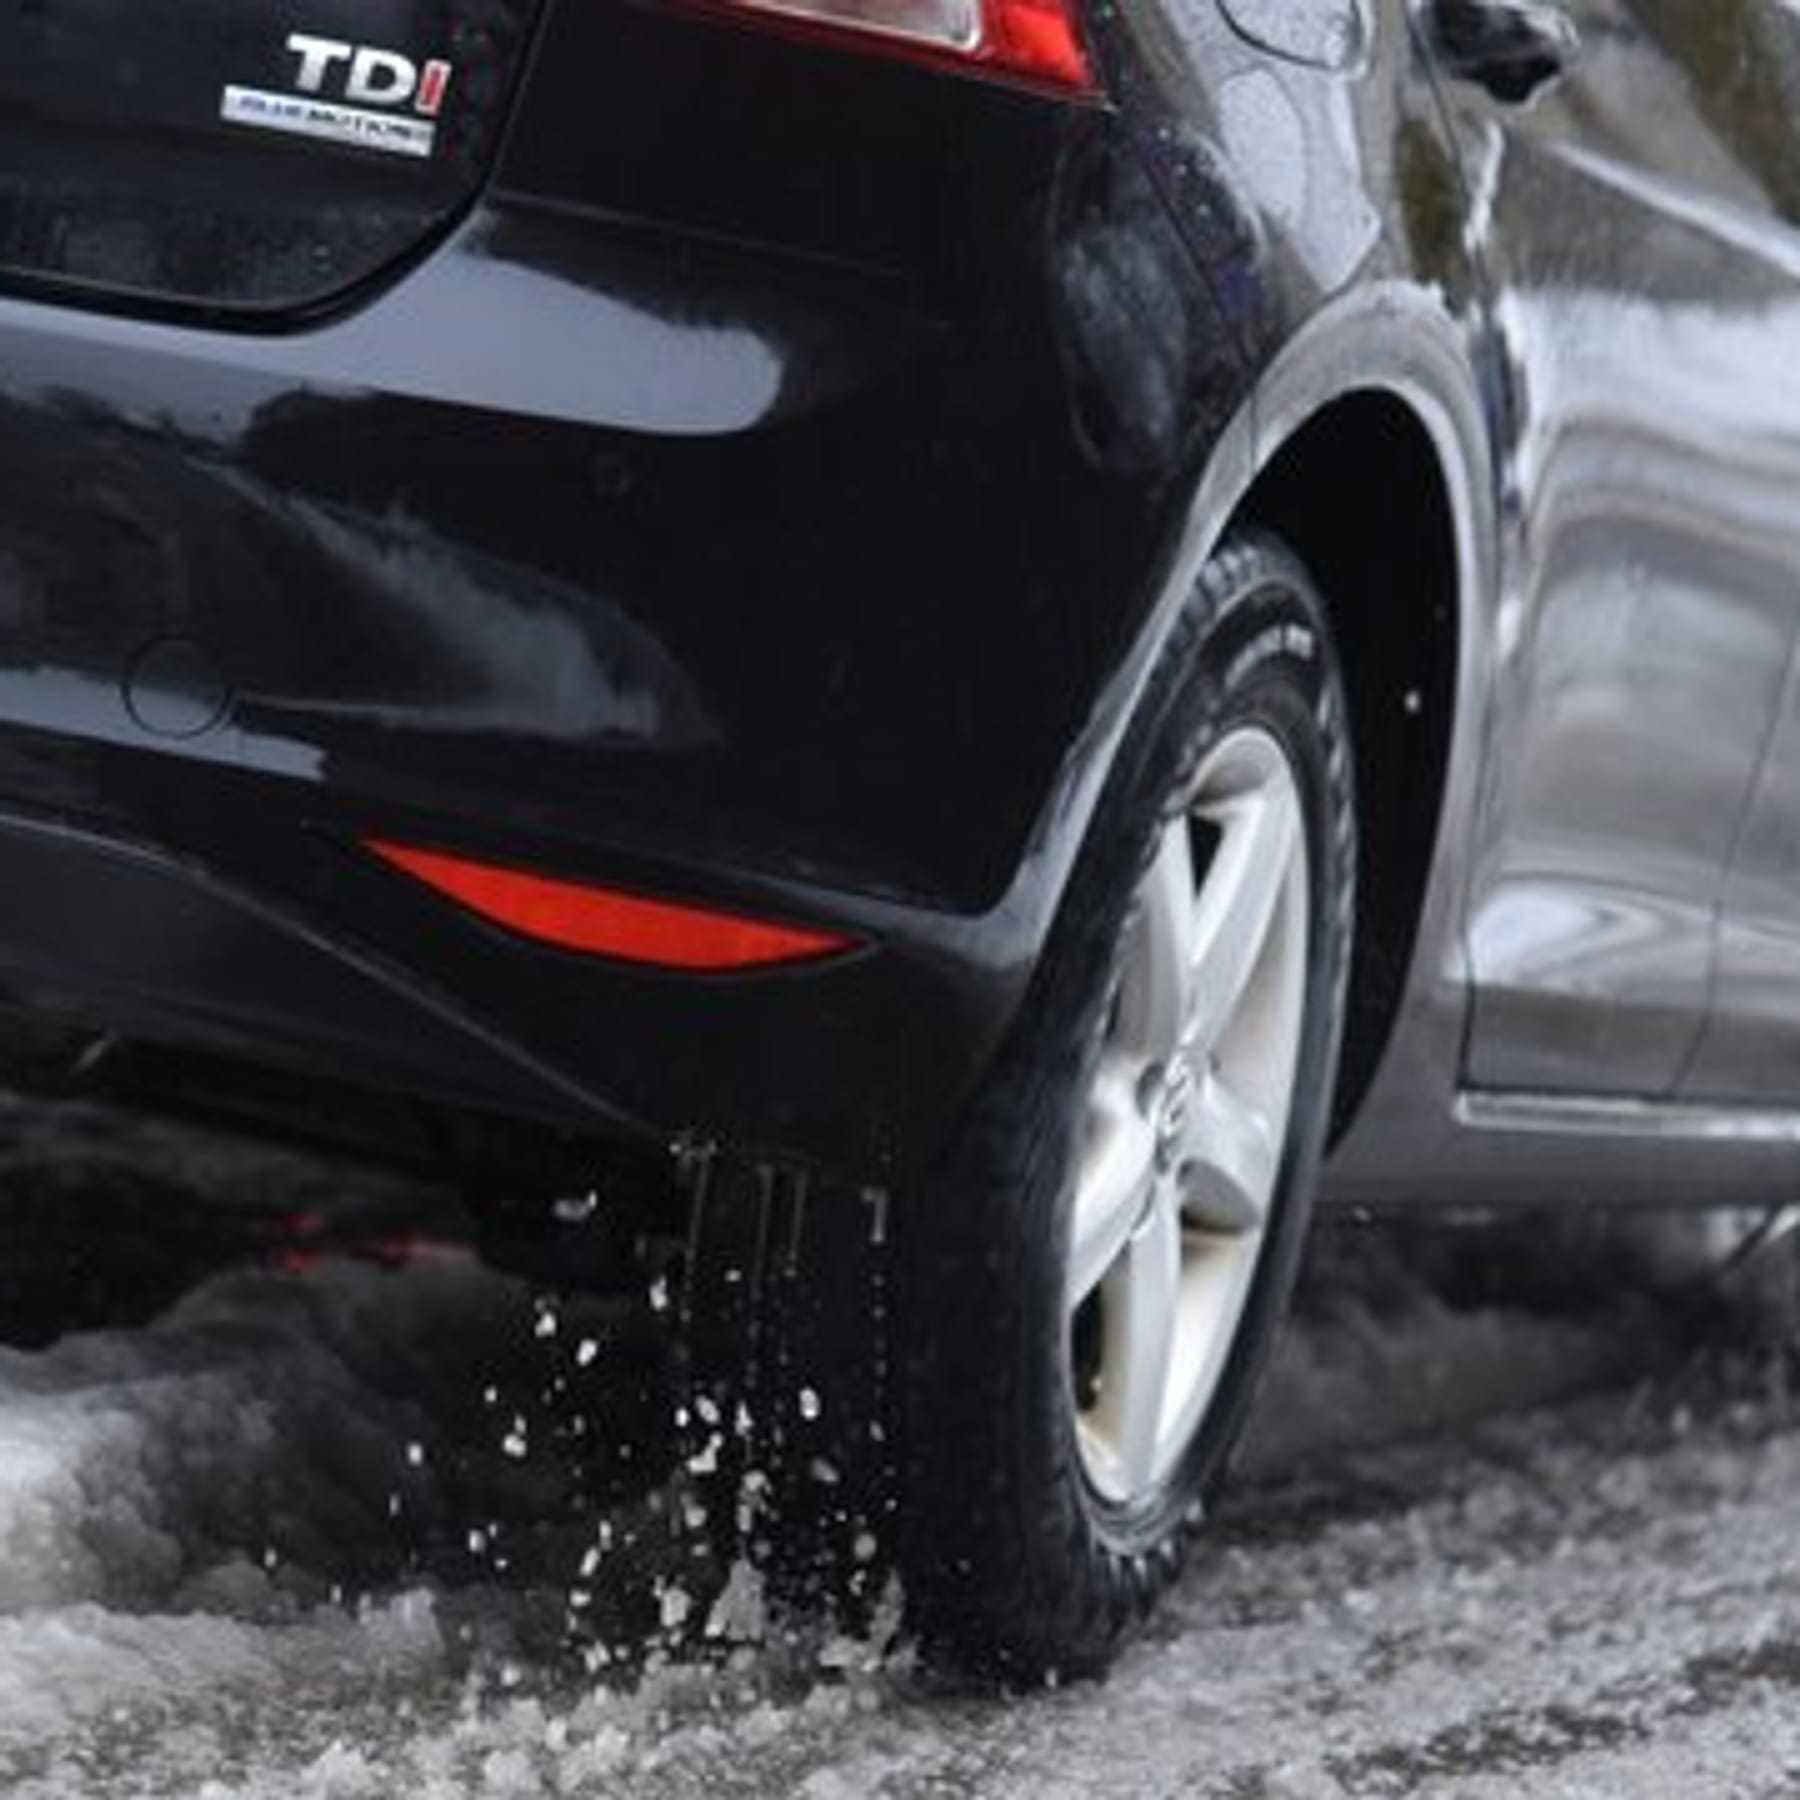 Autopflege im Winter: Praktische Ausstattung zum Schutz vor Kälte